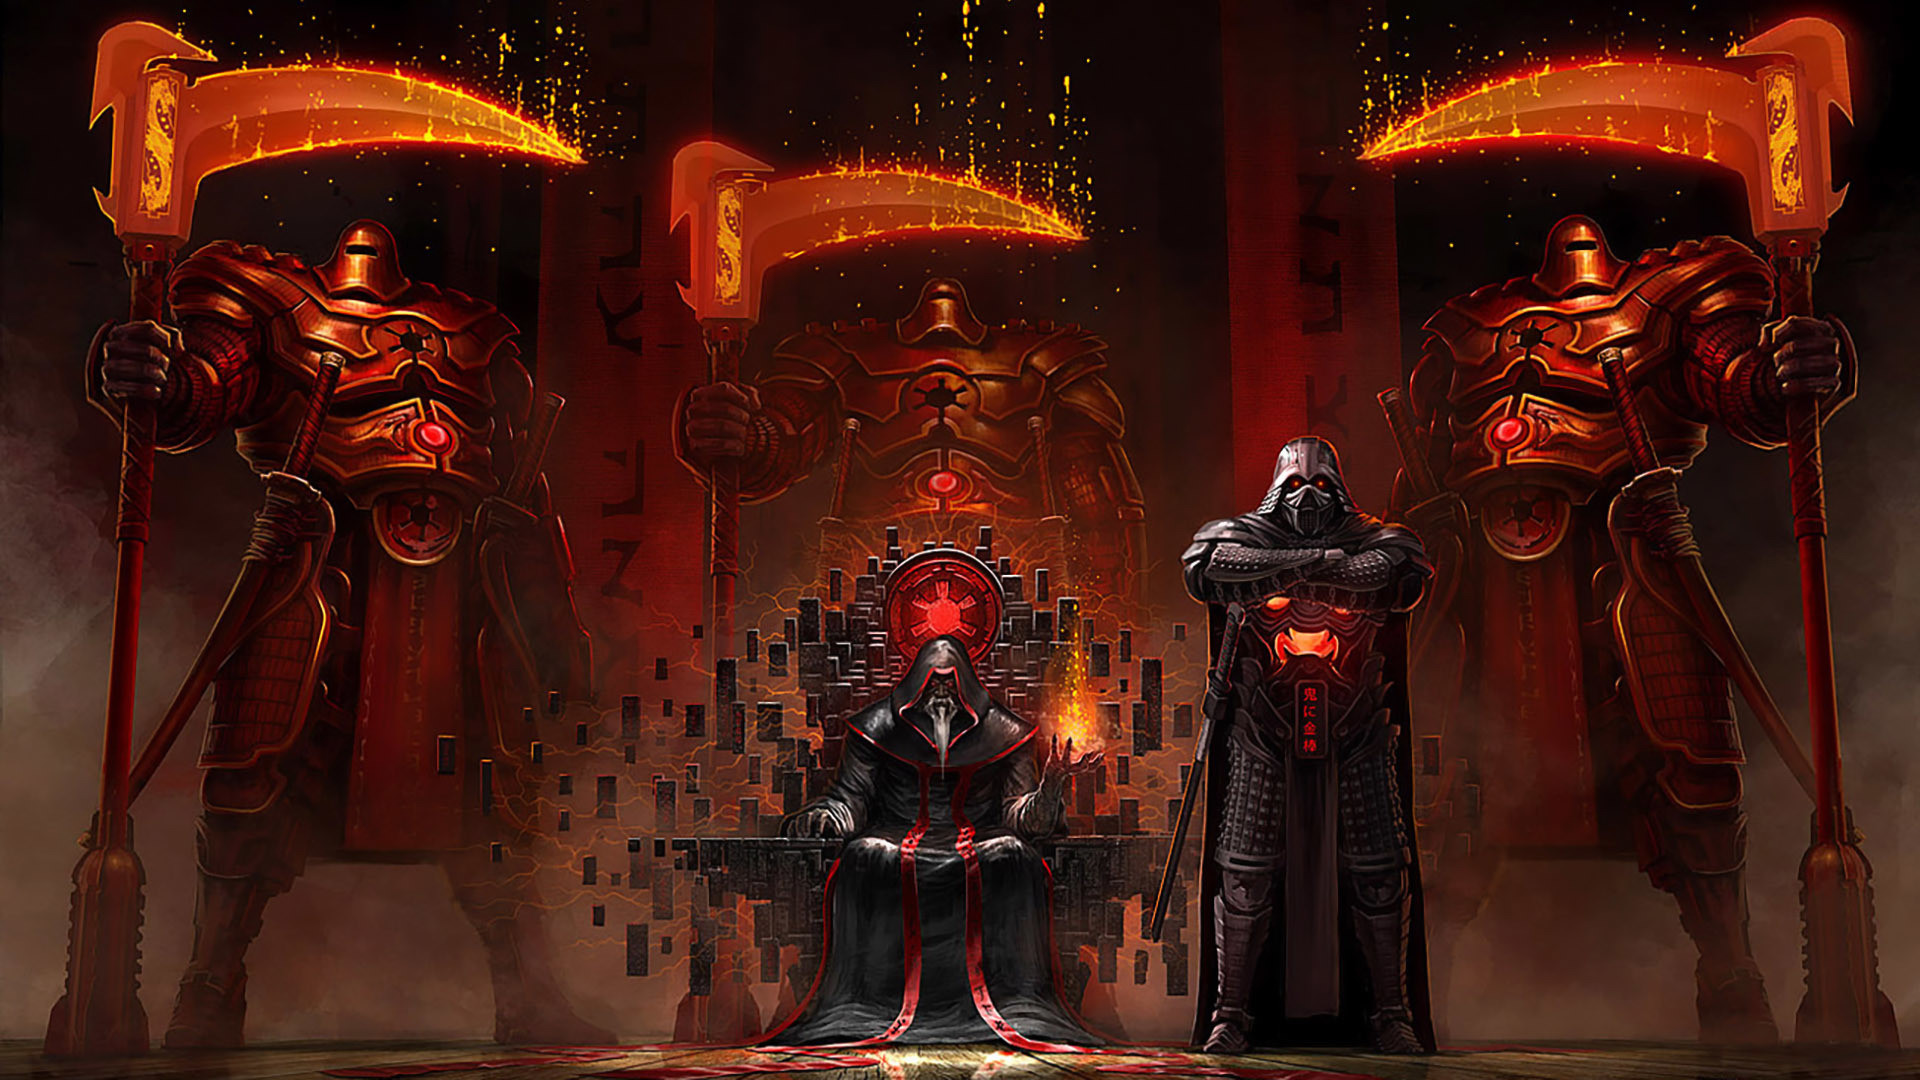 Sci Fi – Star Wars Warrior Armor Darth Vader Throne Scythe Wallpaper